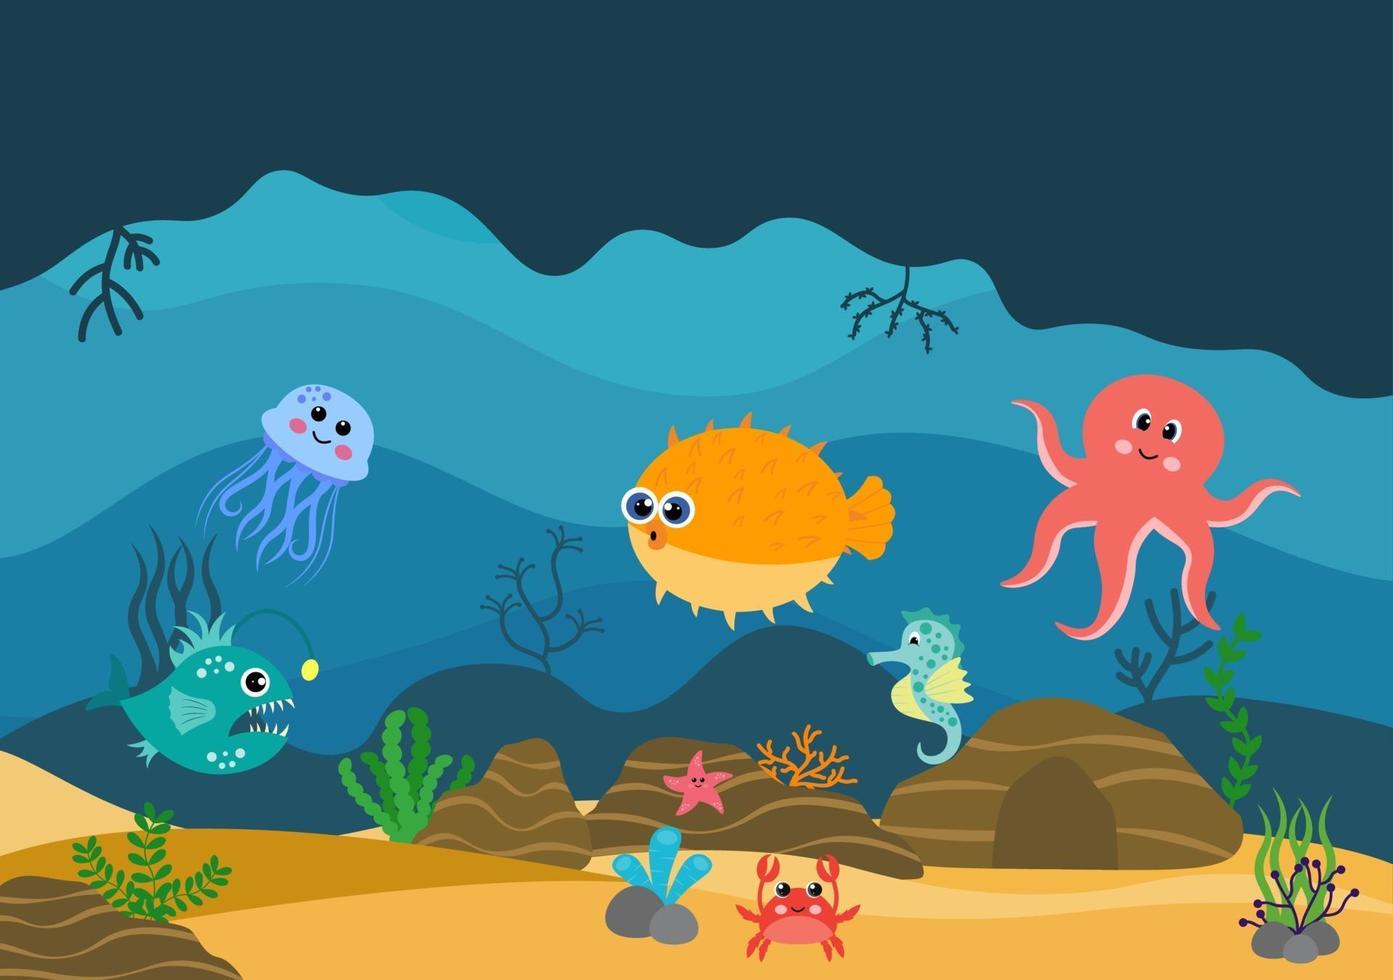 onderwaterlandschap en schattig dierenleven in de zee met zeepaardjes, zeesterren, octopus, schildpadden, haaien, vissen, kwallen, krabben. vector illustratie